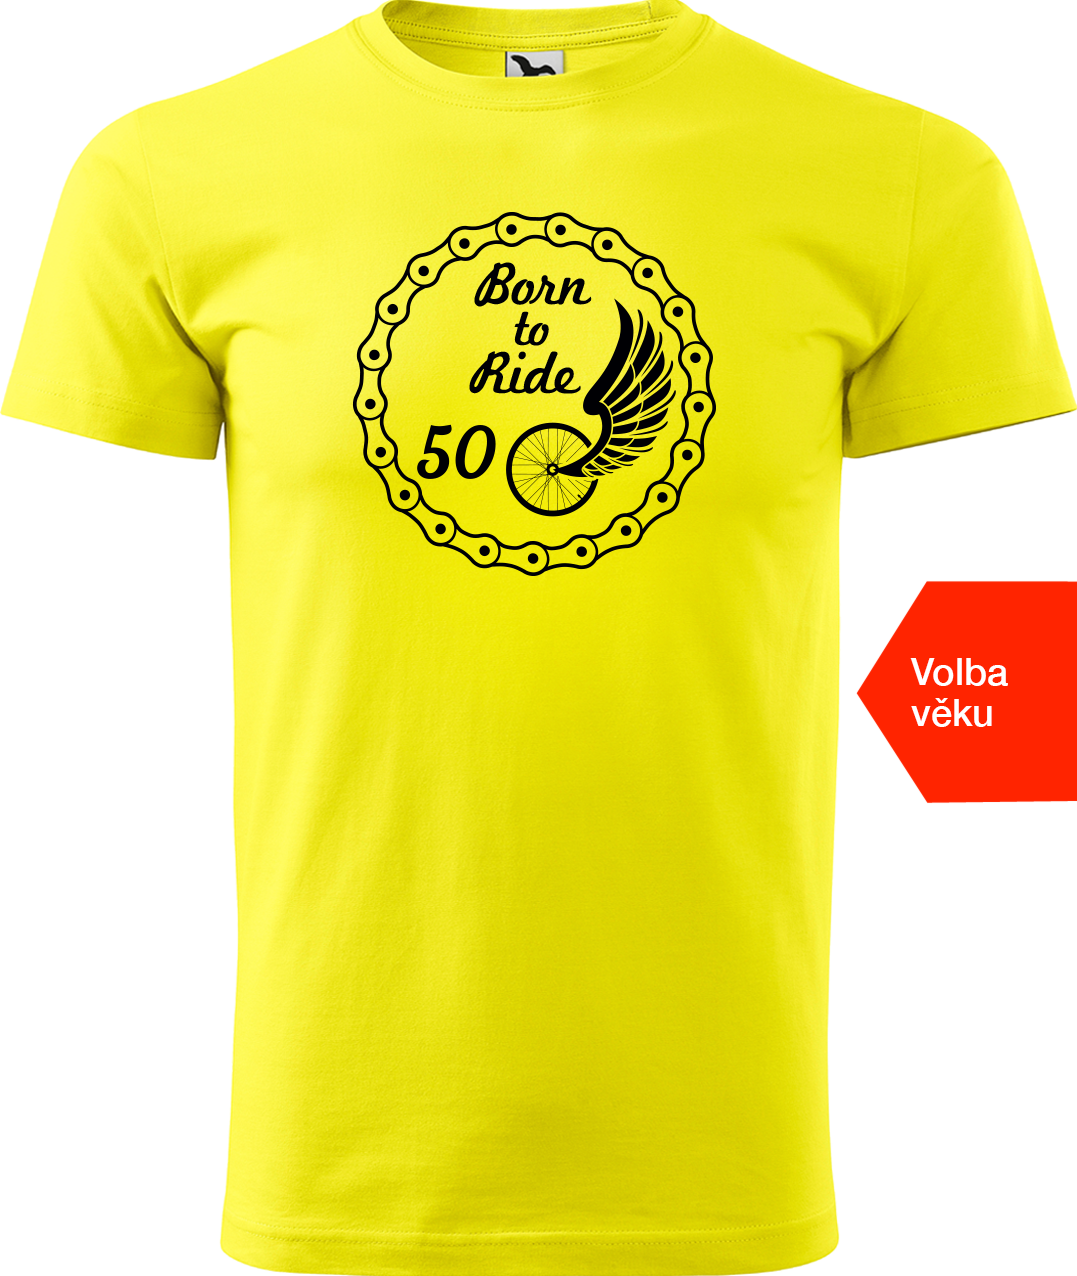 Pánské tričko pro cyklistu s věkem - Born to Ride (wings) Velikost: M, Barva: Žlutá (04)